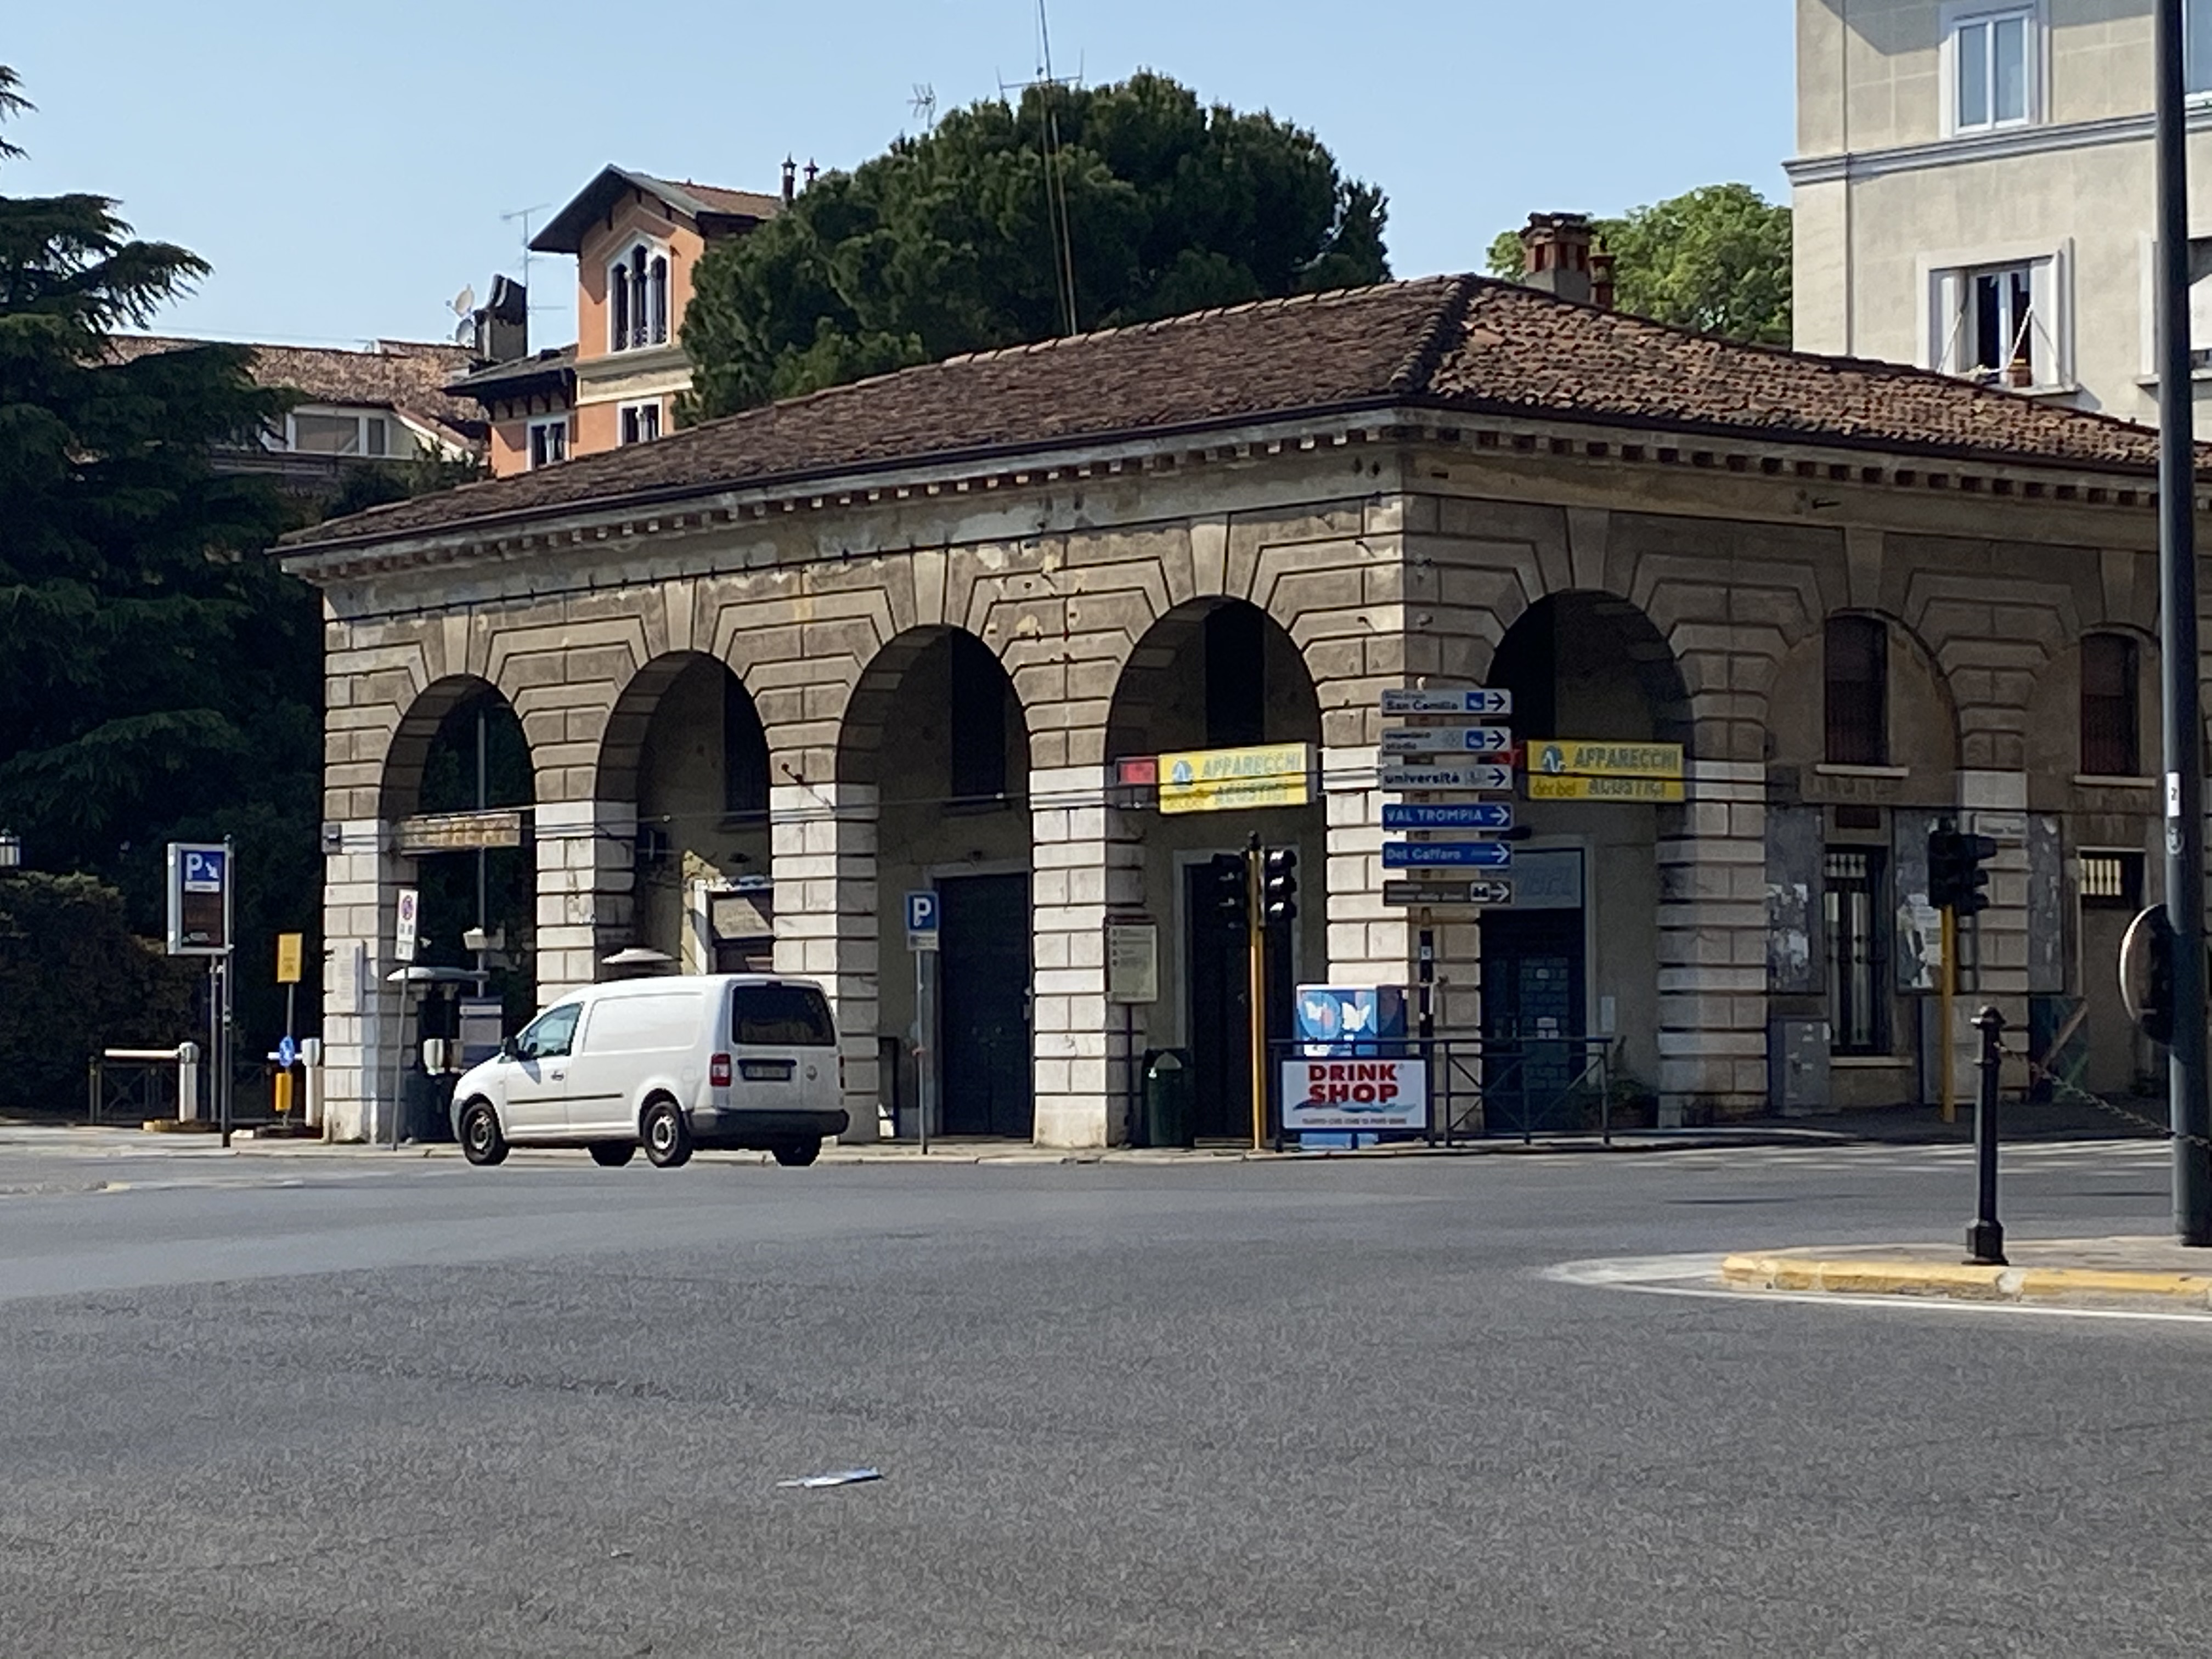 Casello Daziario di Piazzale Arnaldo, 1 (casa, in linea) - Brescia (BS)  (XIX)